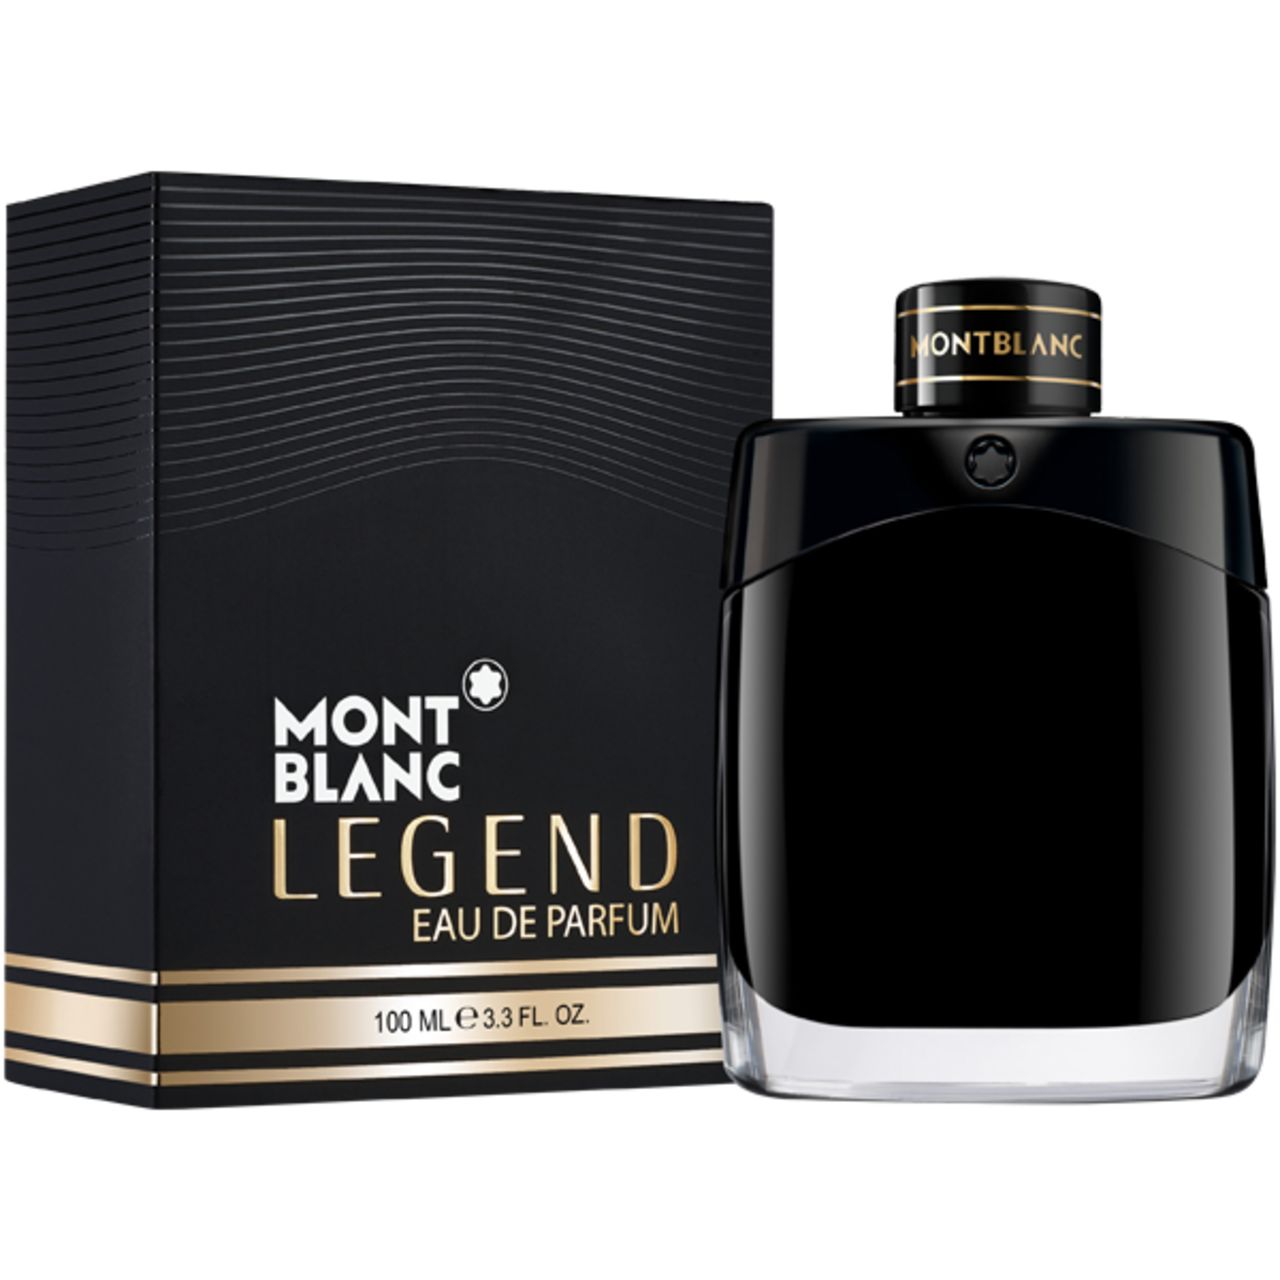 Legend Eau de Parfum EdP 100 ml